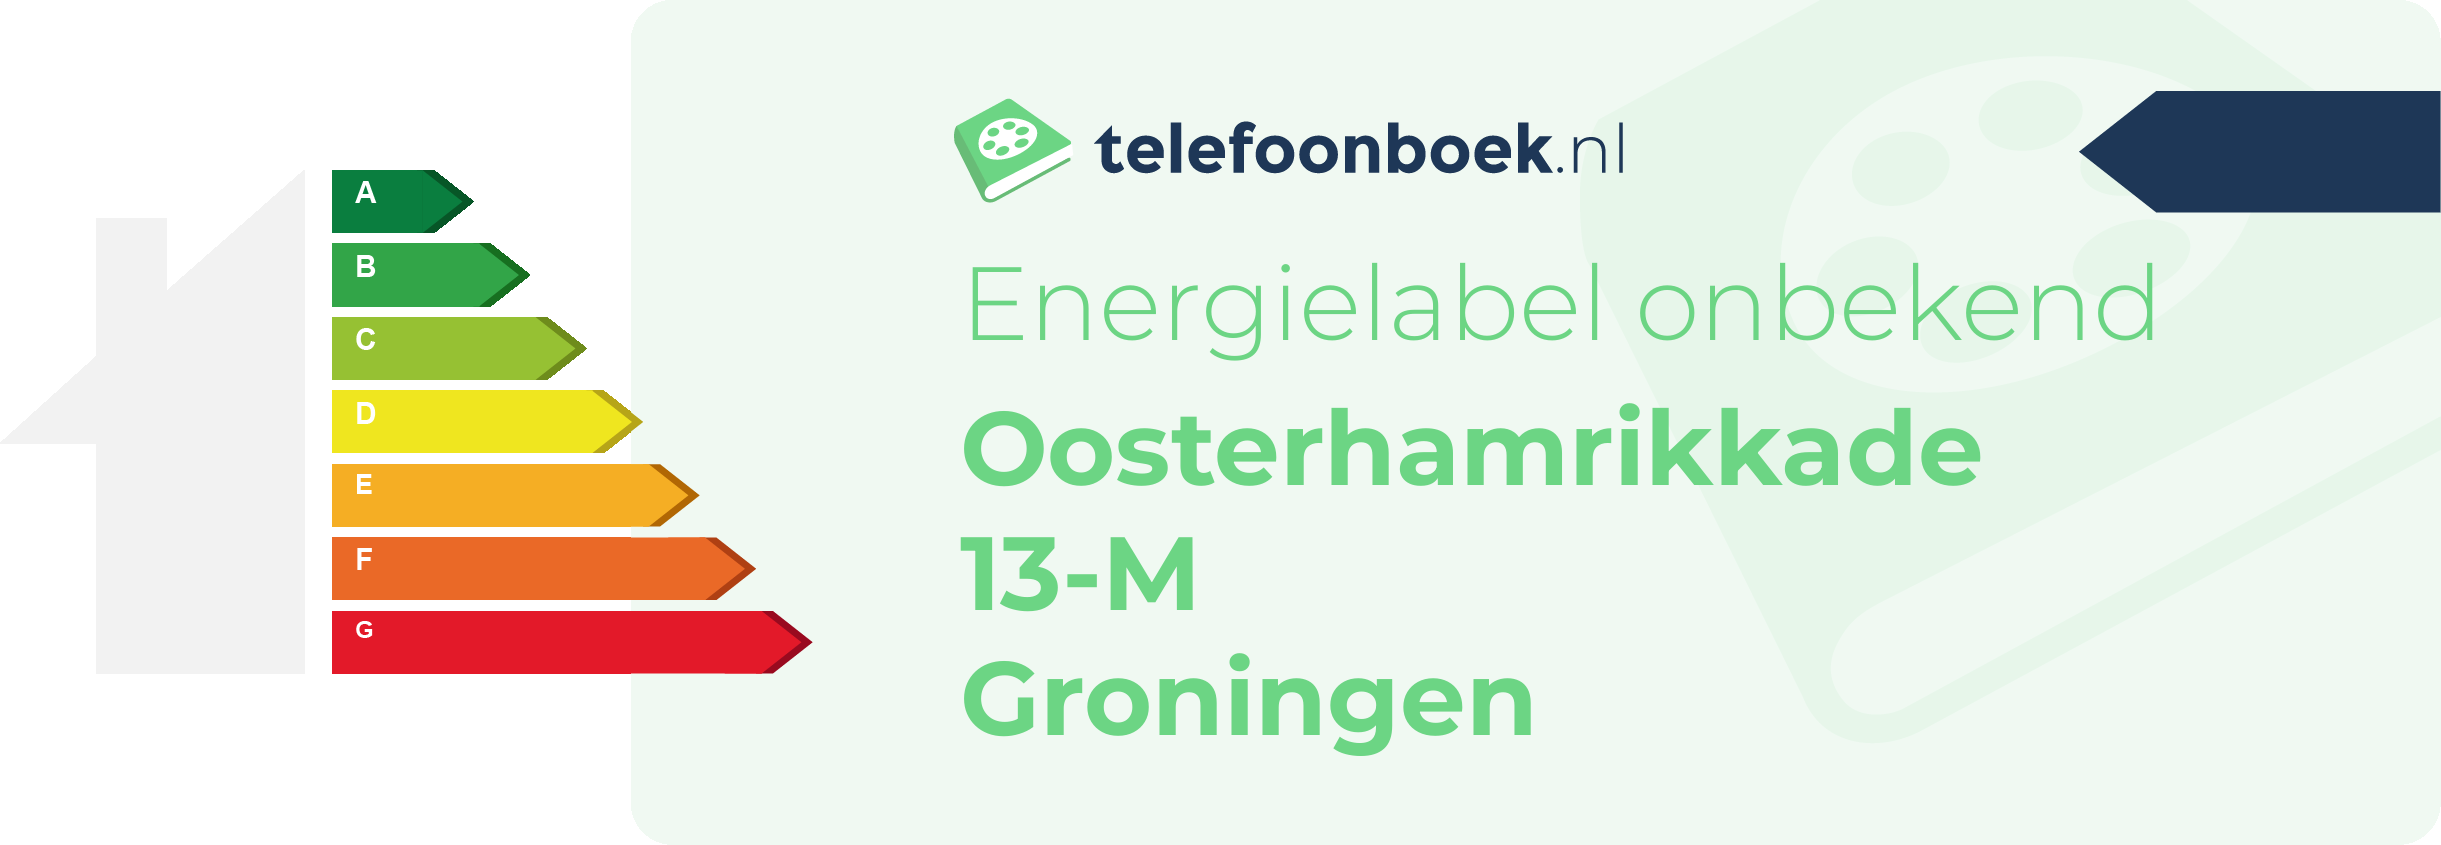 Energielabel Oosterhamrikkade 13-M Groningen